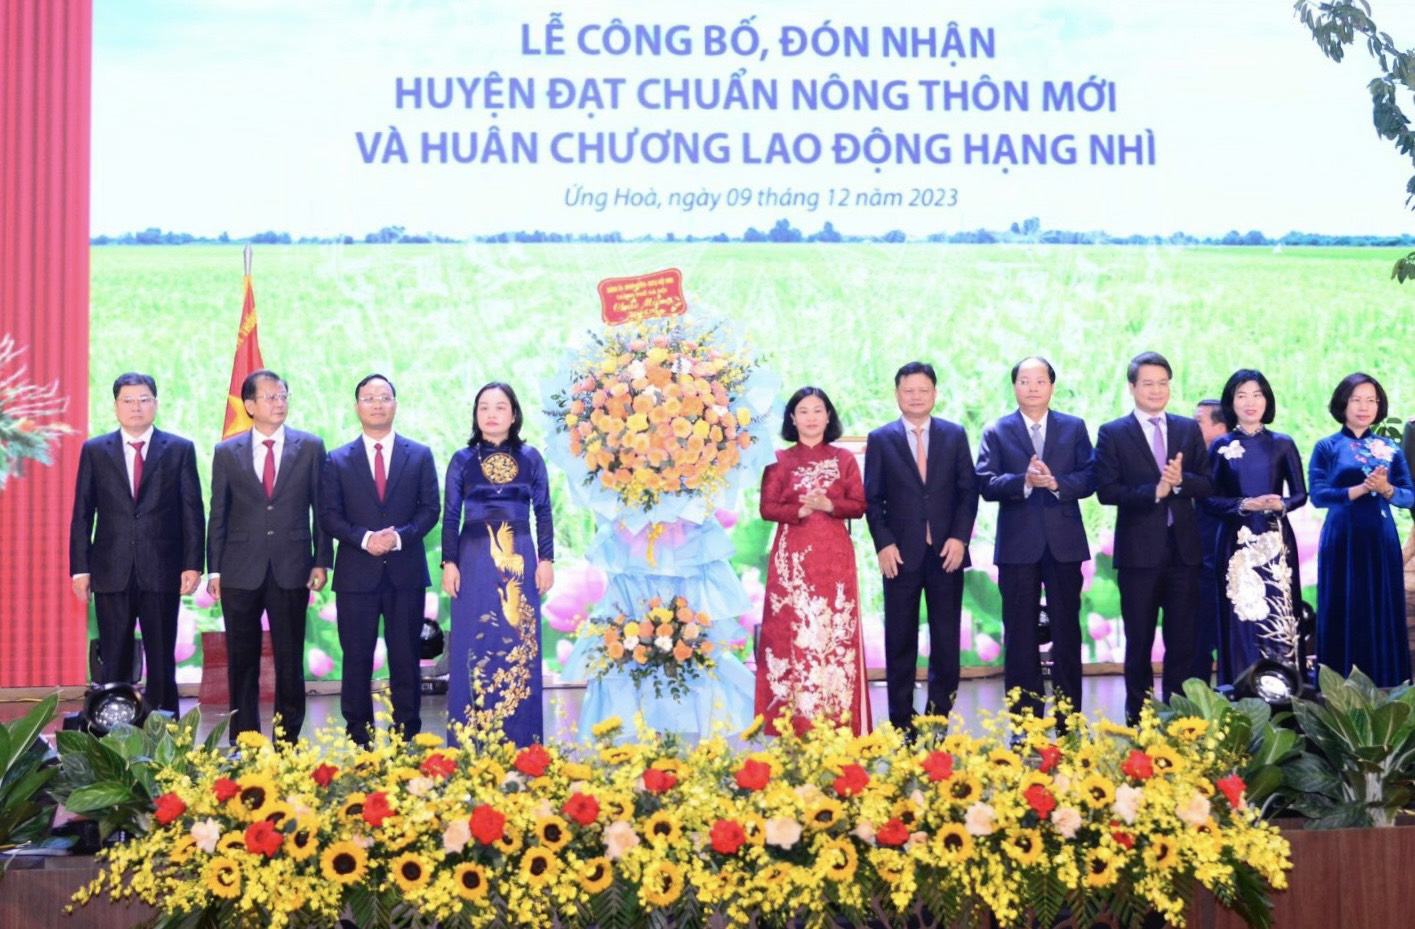 Phó Thủ tướng Chính phủ Trần Lưu Quang dự lễ công bố huyện Ứng Hòa, Hà Nội đón nhận huyện nông thôn mới - Ảnh 5.